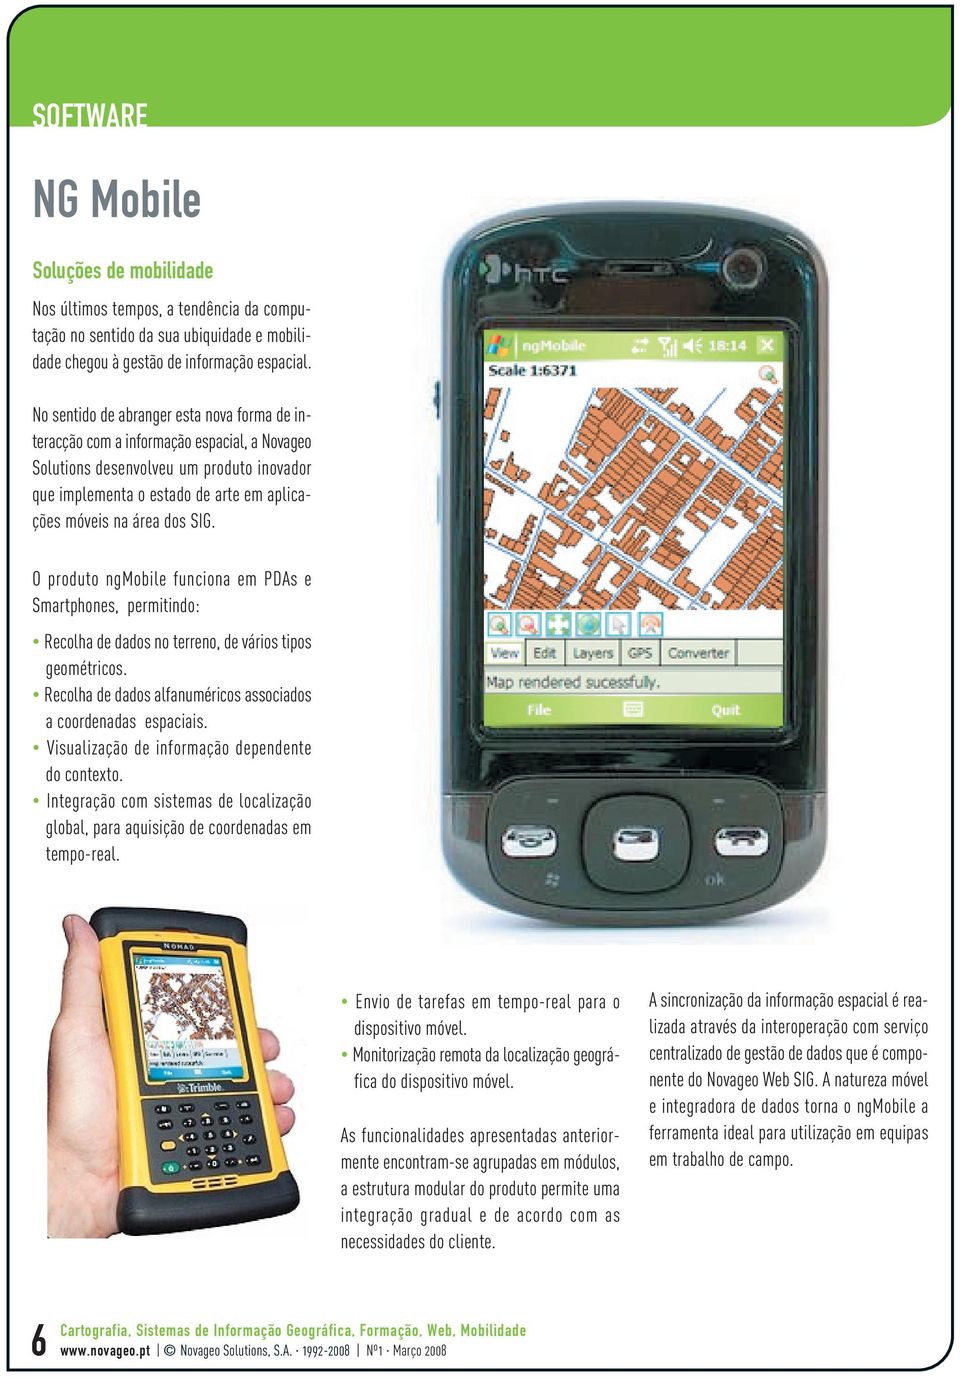 SIG. O produto ngmobile funciona em PDAs e Smartphones, permitindo: Recolha de dados no terreno, de vários tipos geométricos. Recolha de dados alfanuméricos associados a coordenadas espaciais.